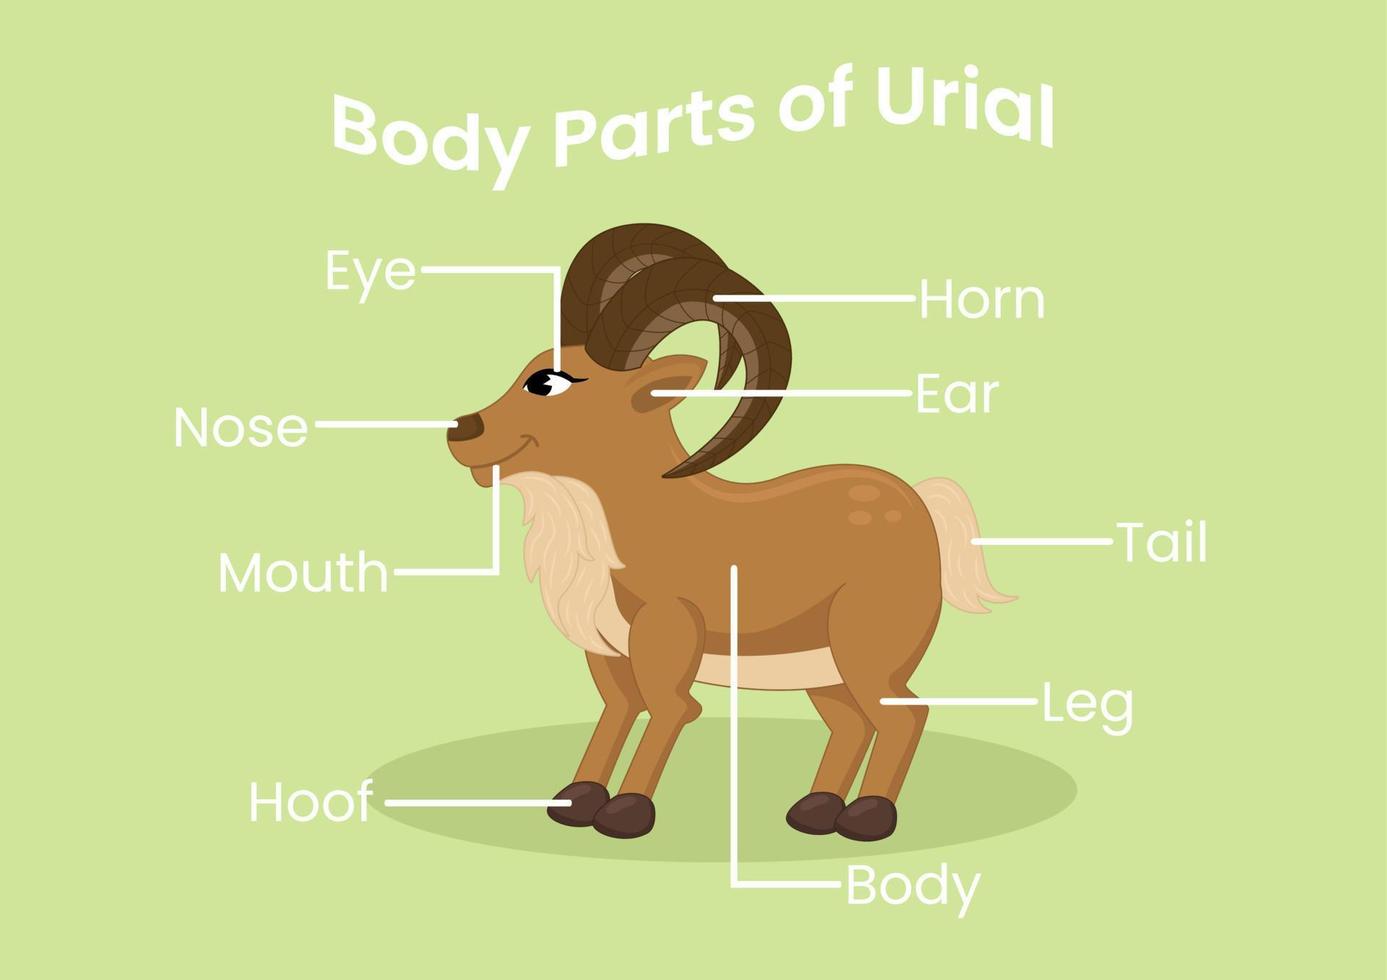 vektor kropp delar av de söt tecknad serie urial. djur anatomi i engelsk för ungar. inlärning ord.